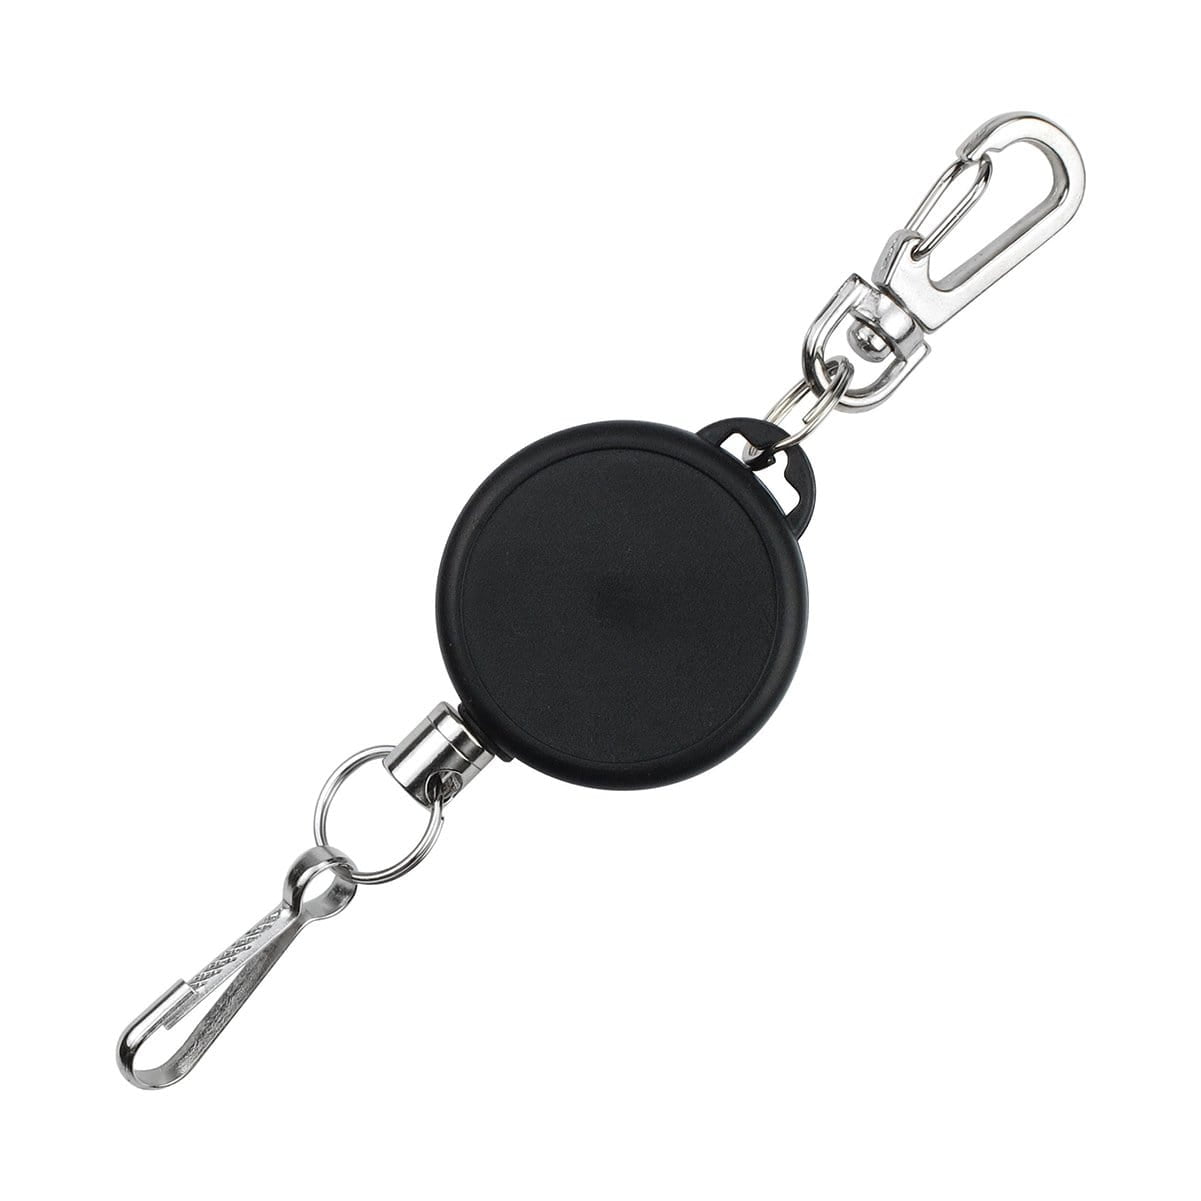 Heavy Duty Metal Retractable Badge Holders Carabiner Keychain Belt